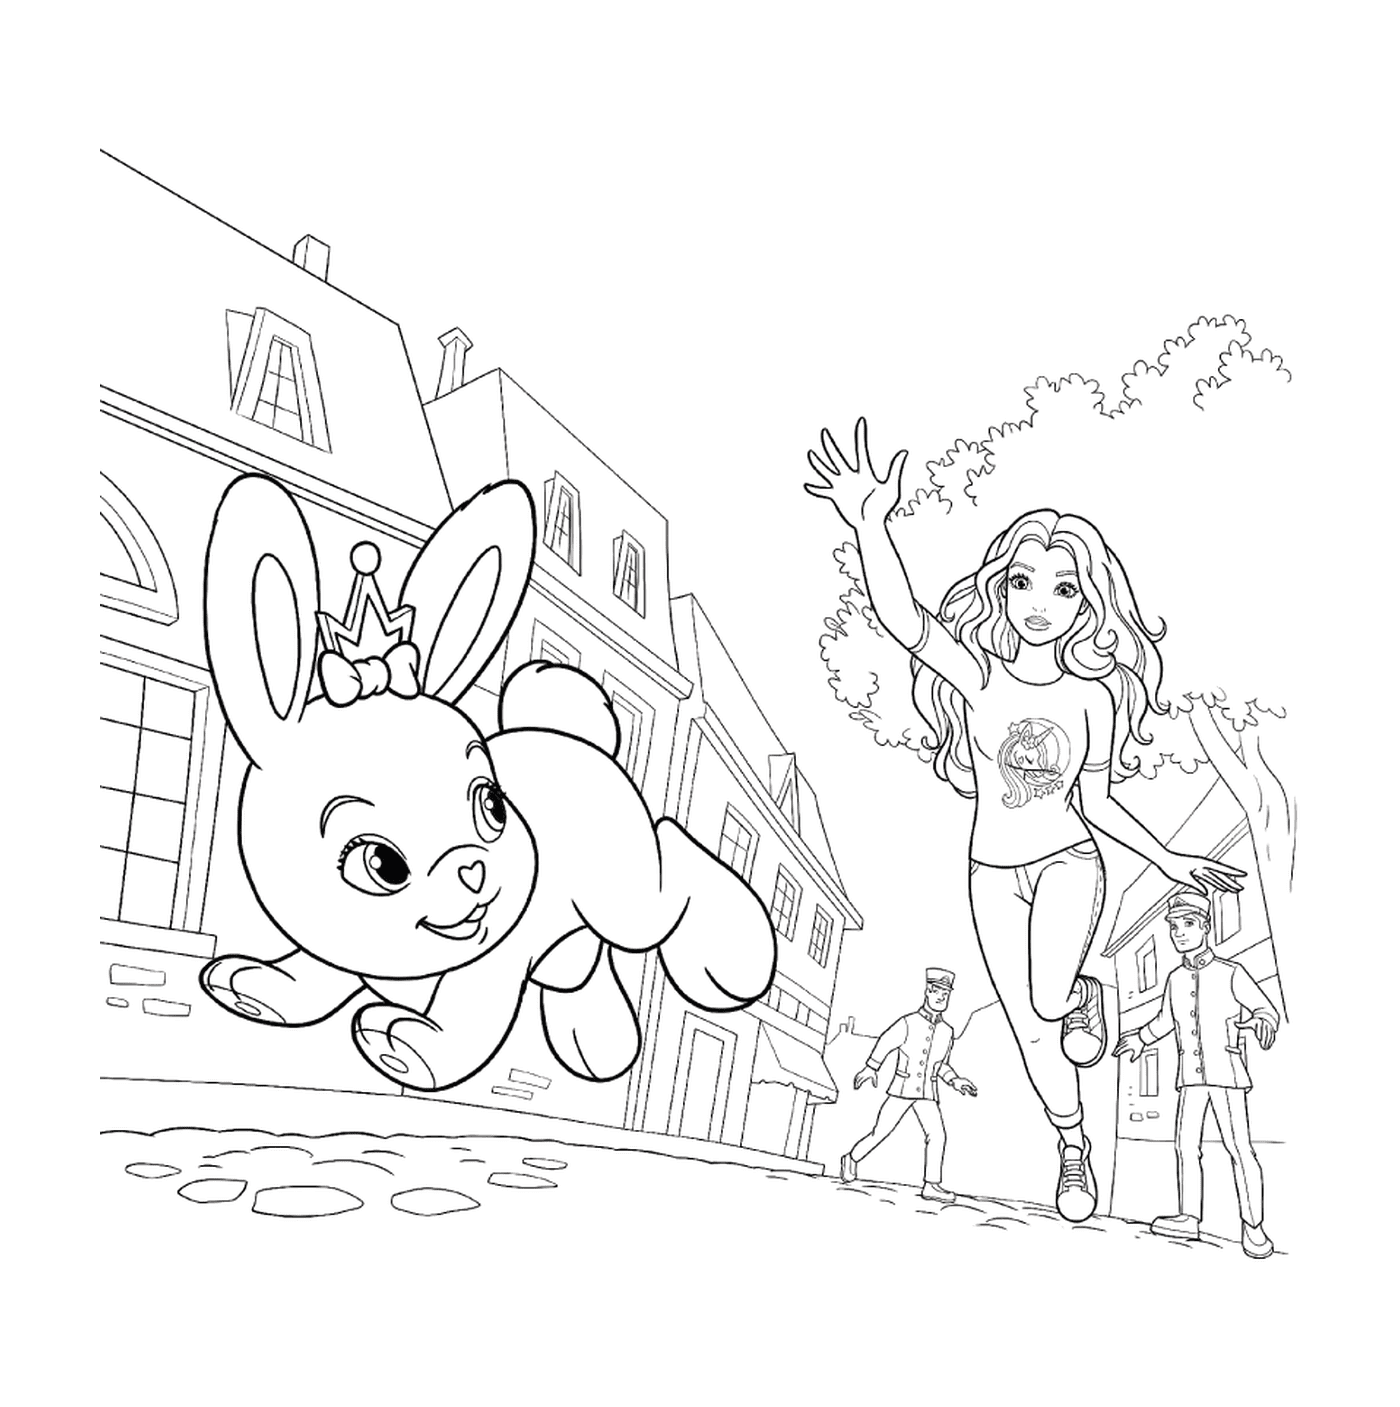  Una chica corriendo con un conejo 